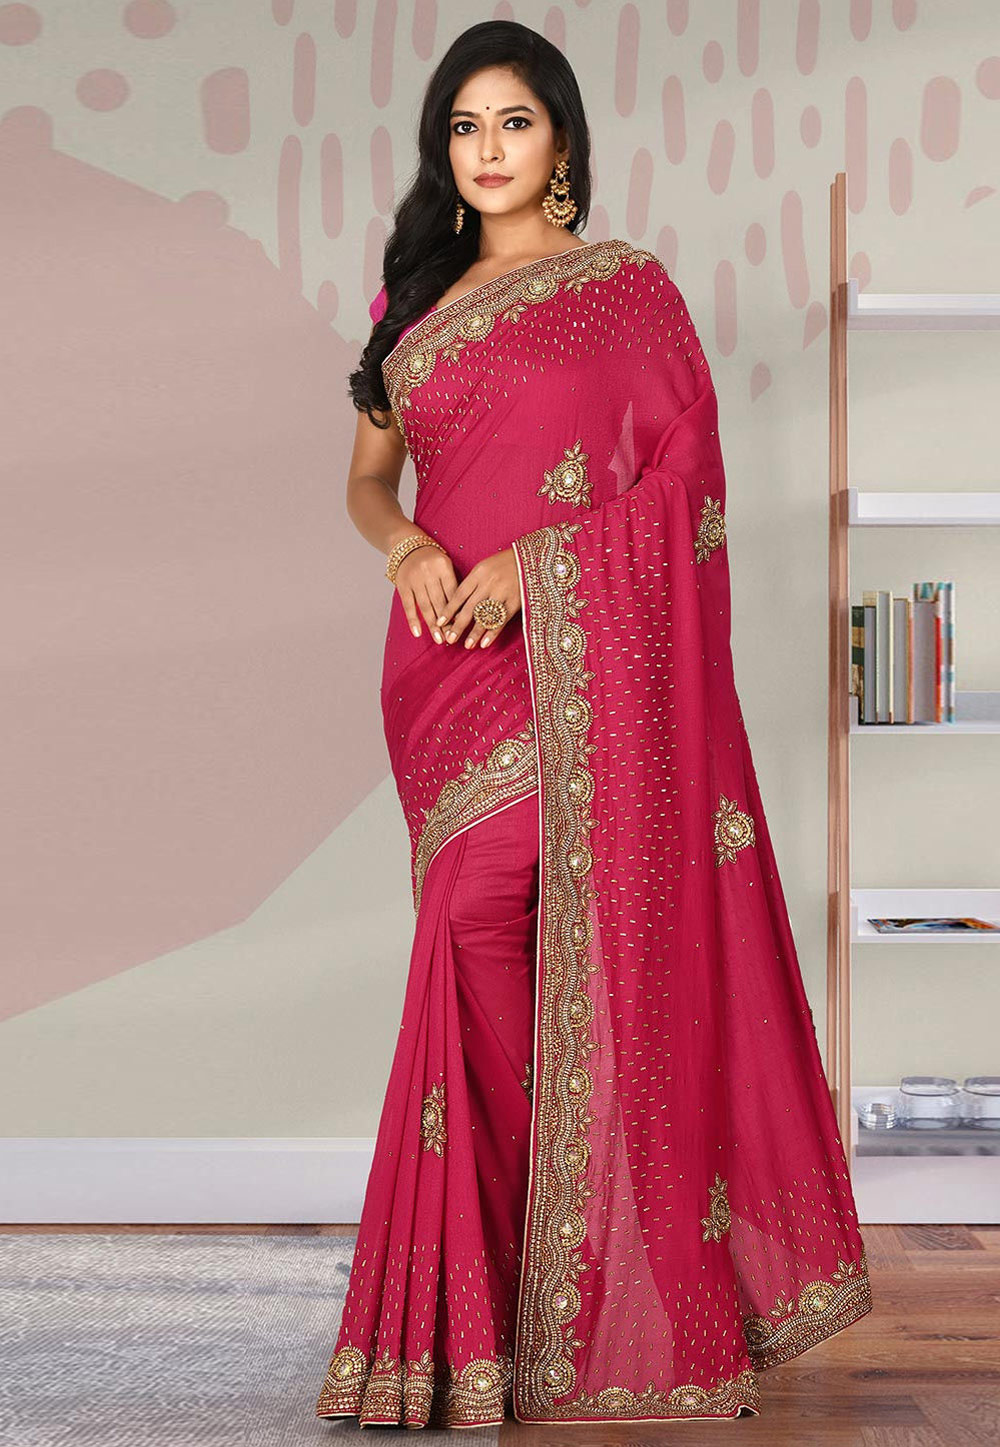 Buy Pink Art Silk Cotton Chikankari Saree Festive Wear Online at Best Price